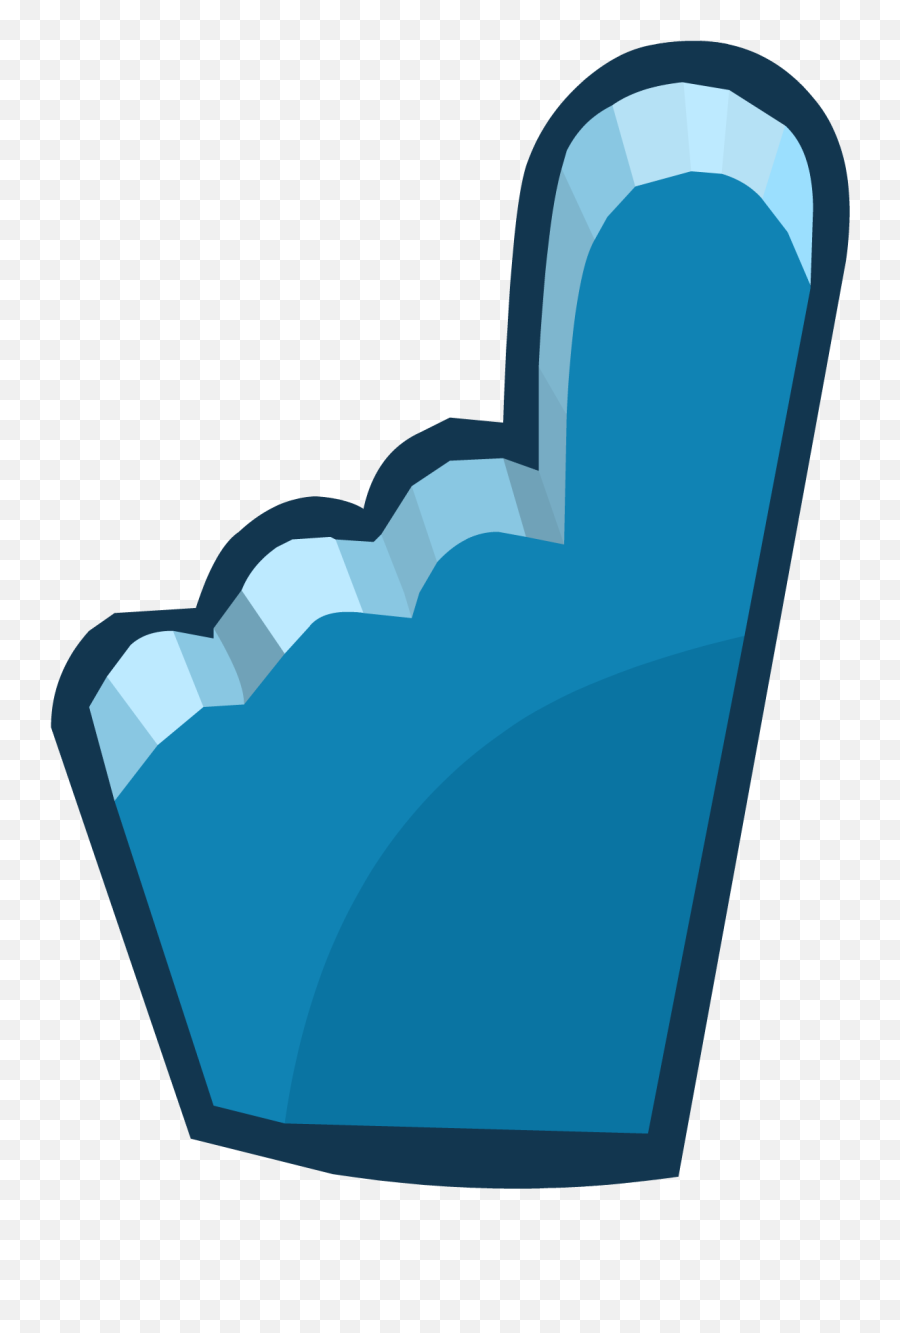 Penguin Cup 2014 Emoticons Blue Foam - Emoticon Emoji,Penguin Emoticon